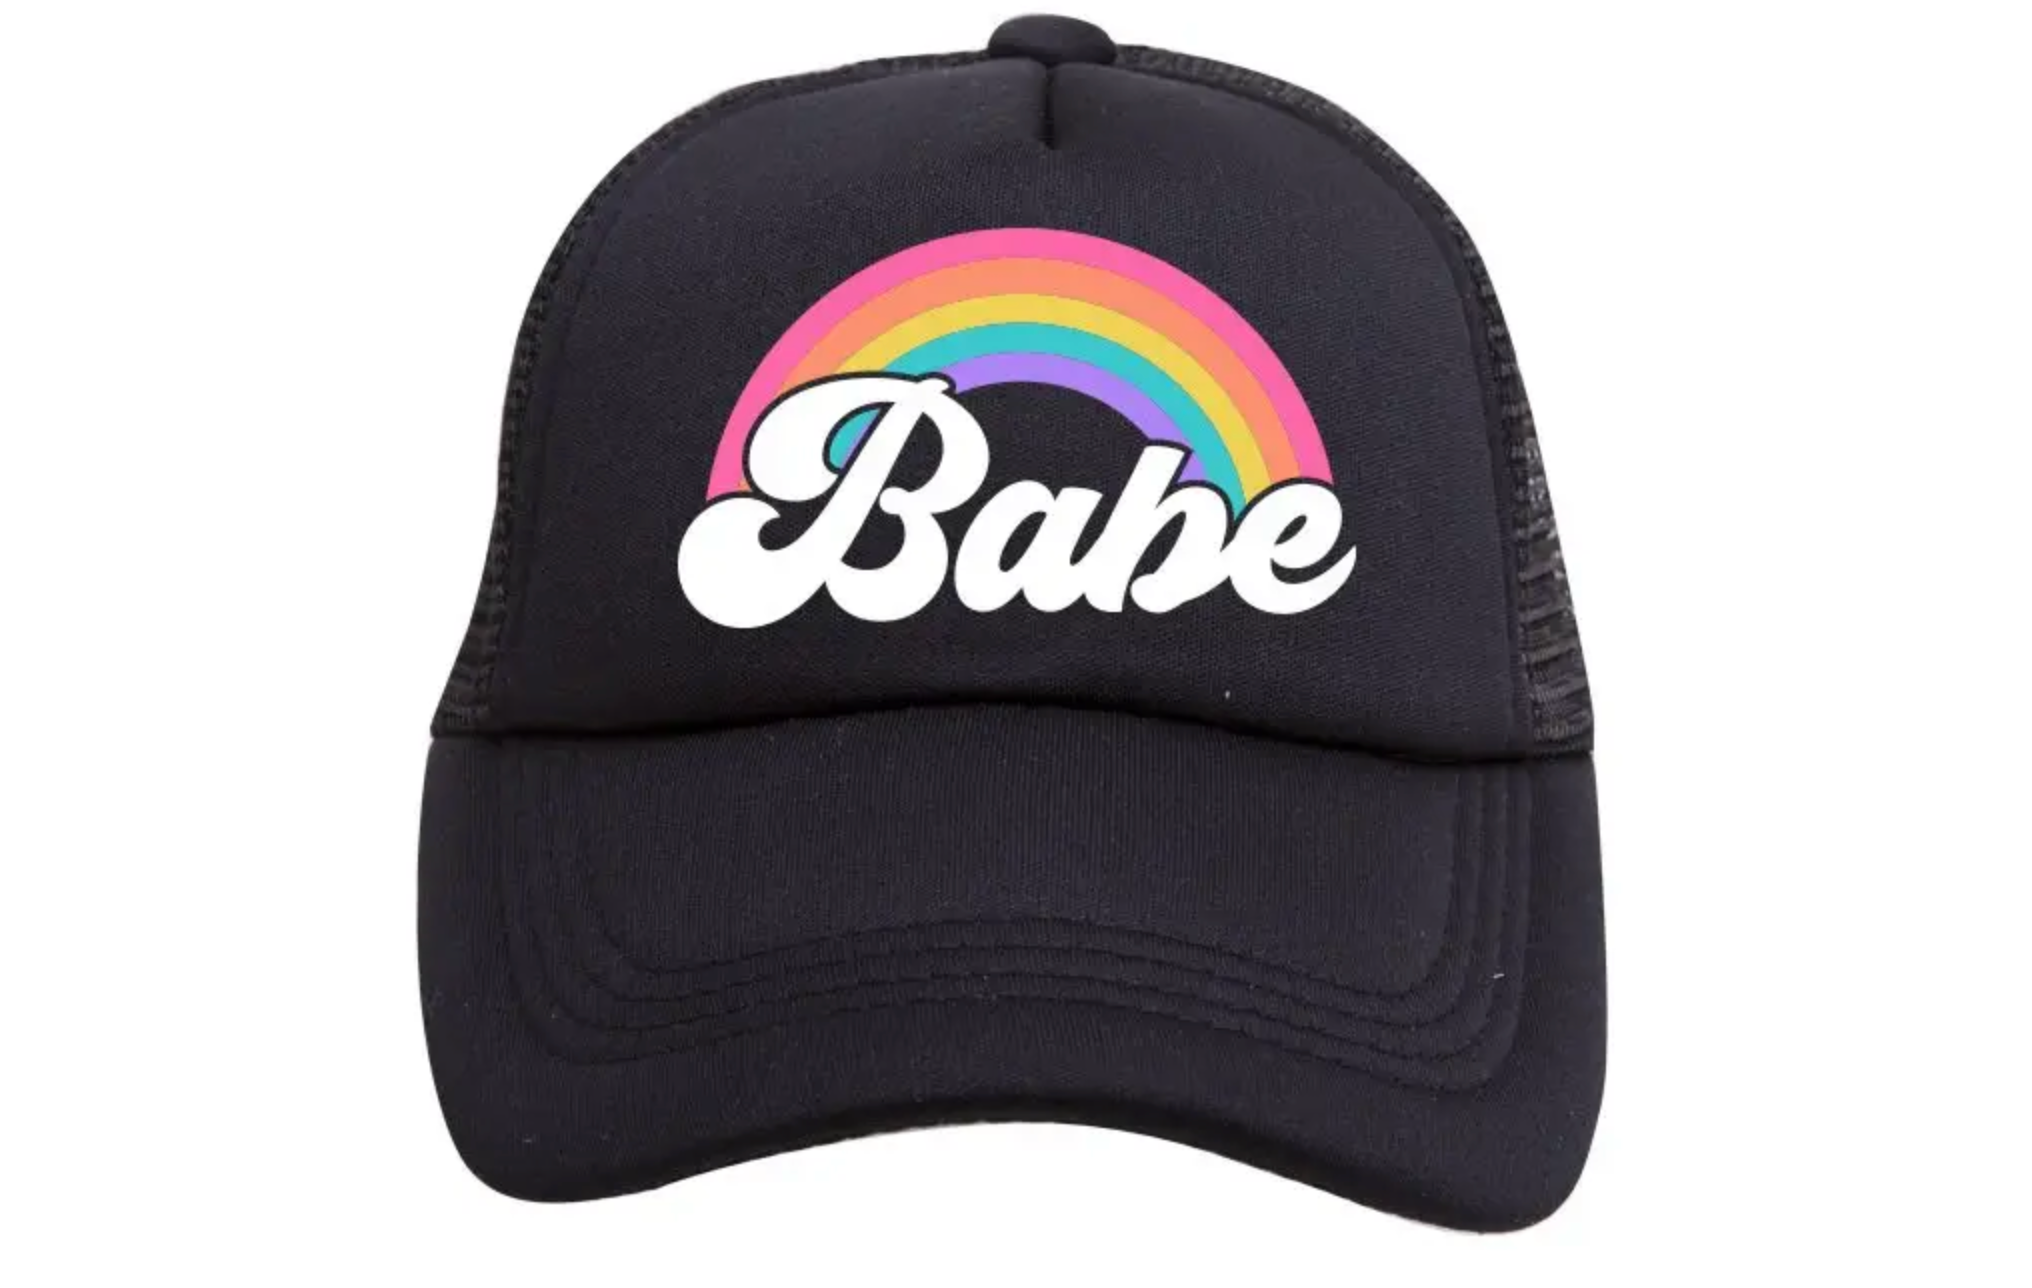 Tiny Trucker Trucker Hat - Rainbow Babe